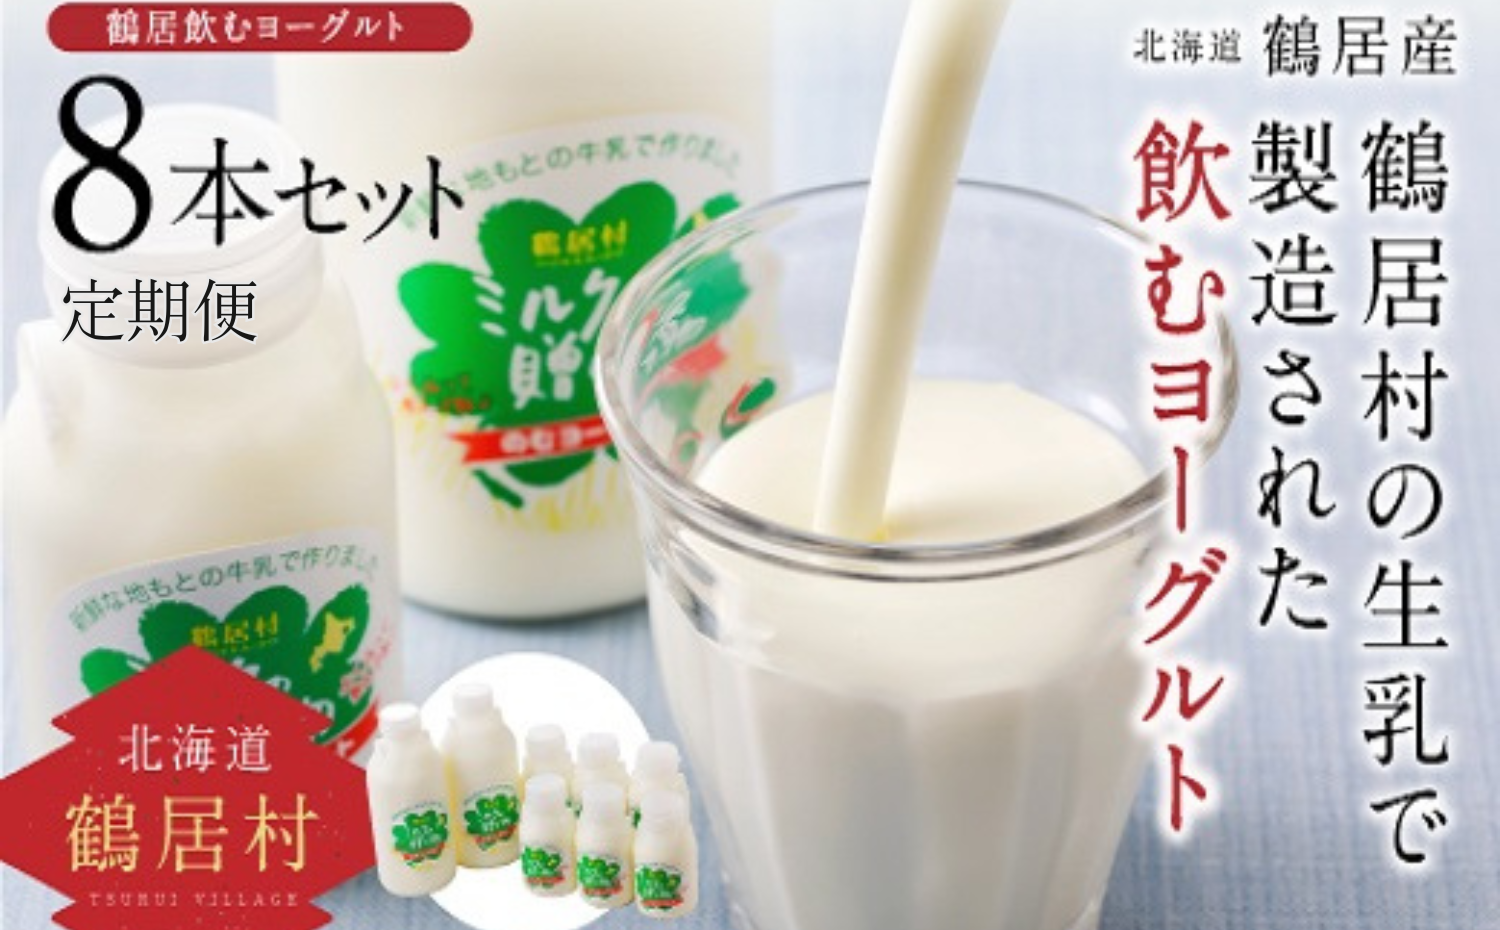 鶴居村 飲むヨーグルト ミルクの贈り物セット [定期便] 6か月